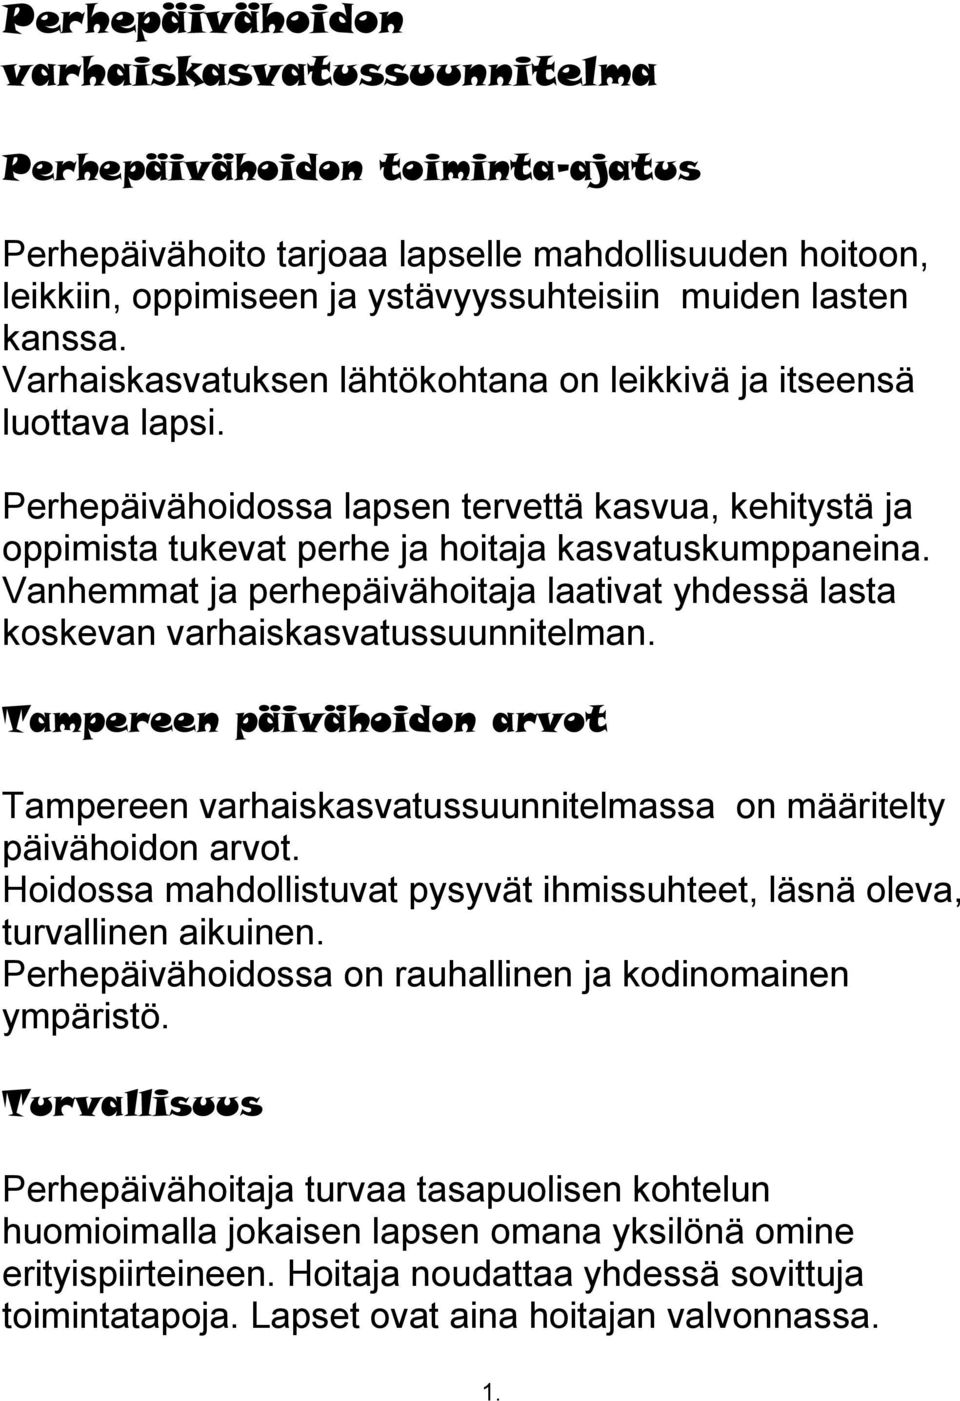 Vanhemmat ja perhepäivähoitaja laativat yhdessä lasta koskevan varhaiskasvatussuunnitelman. Tampereen päivähoidon arvot Tampereen varhaiskasvatussuunnitelmassa on määritelty päivähoidon arvot.